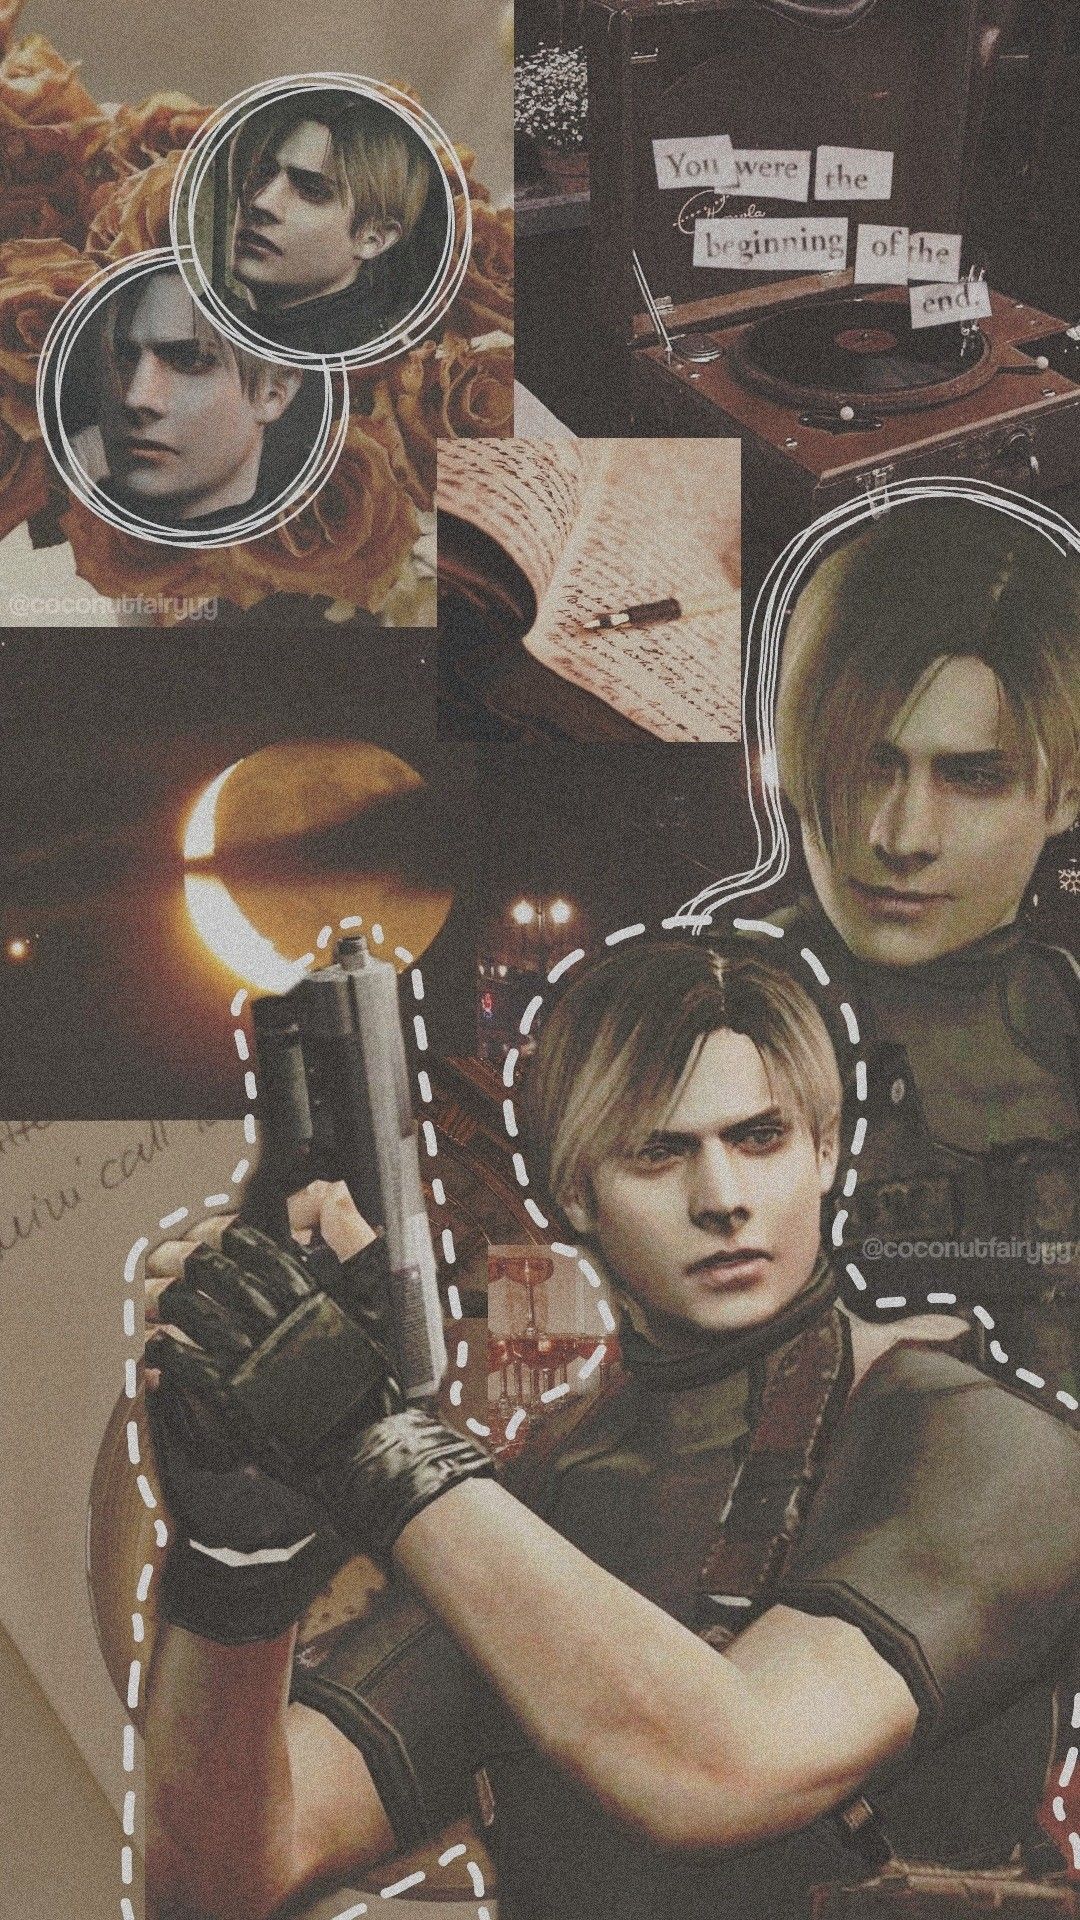  Resident Evil Hintergrundbild 1080x1920. Leon S. Kennedy Wallpaper. Resident evil leon, Resident evil collection, Resident evil anime